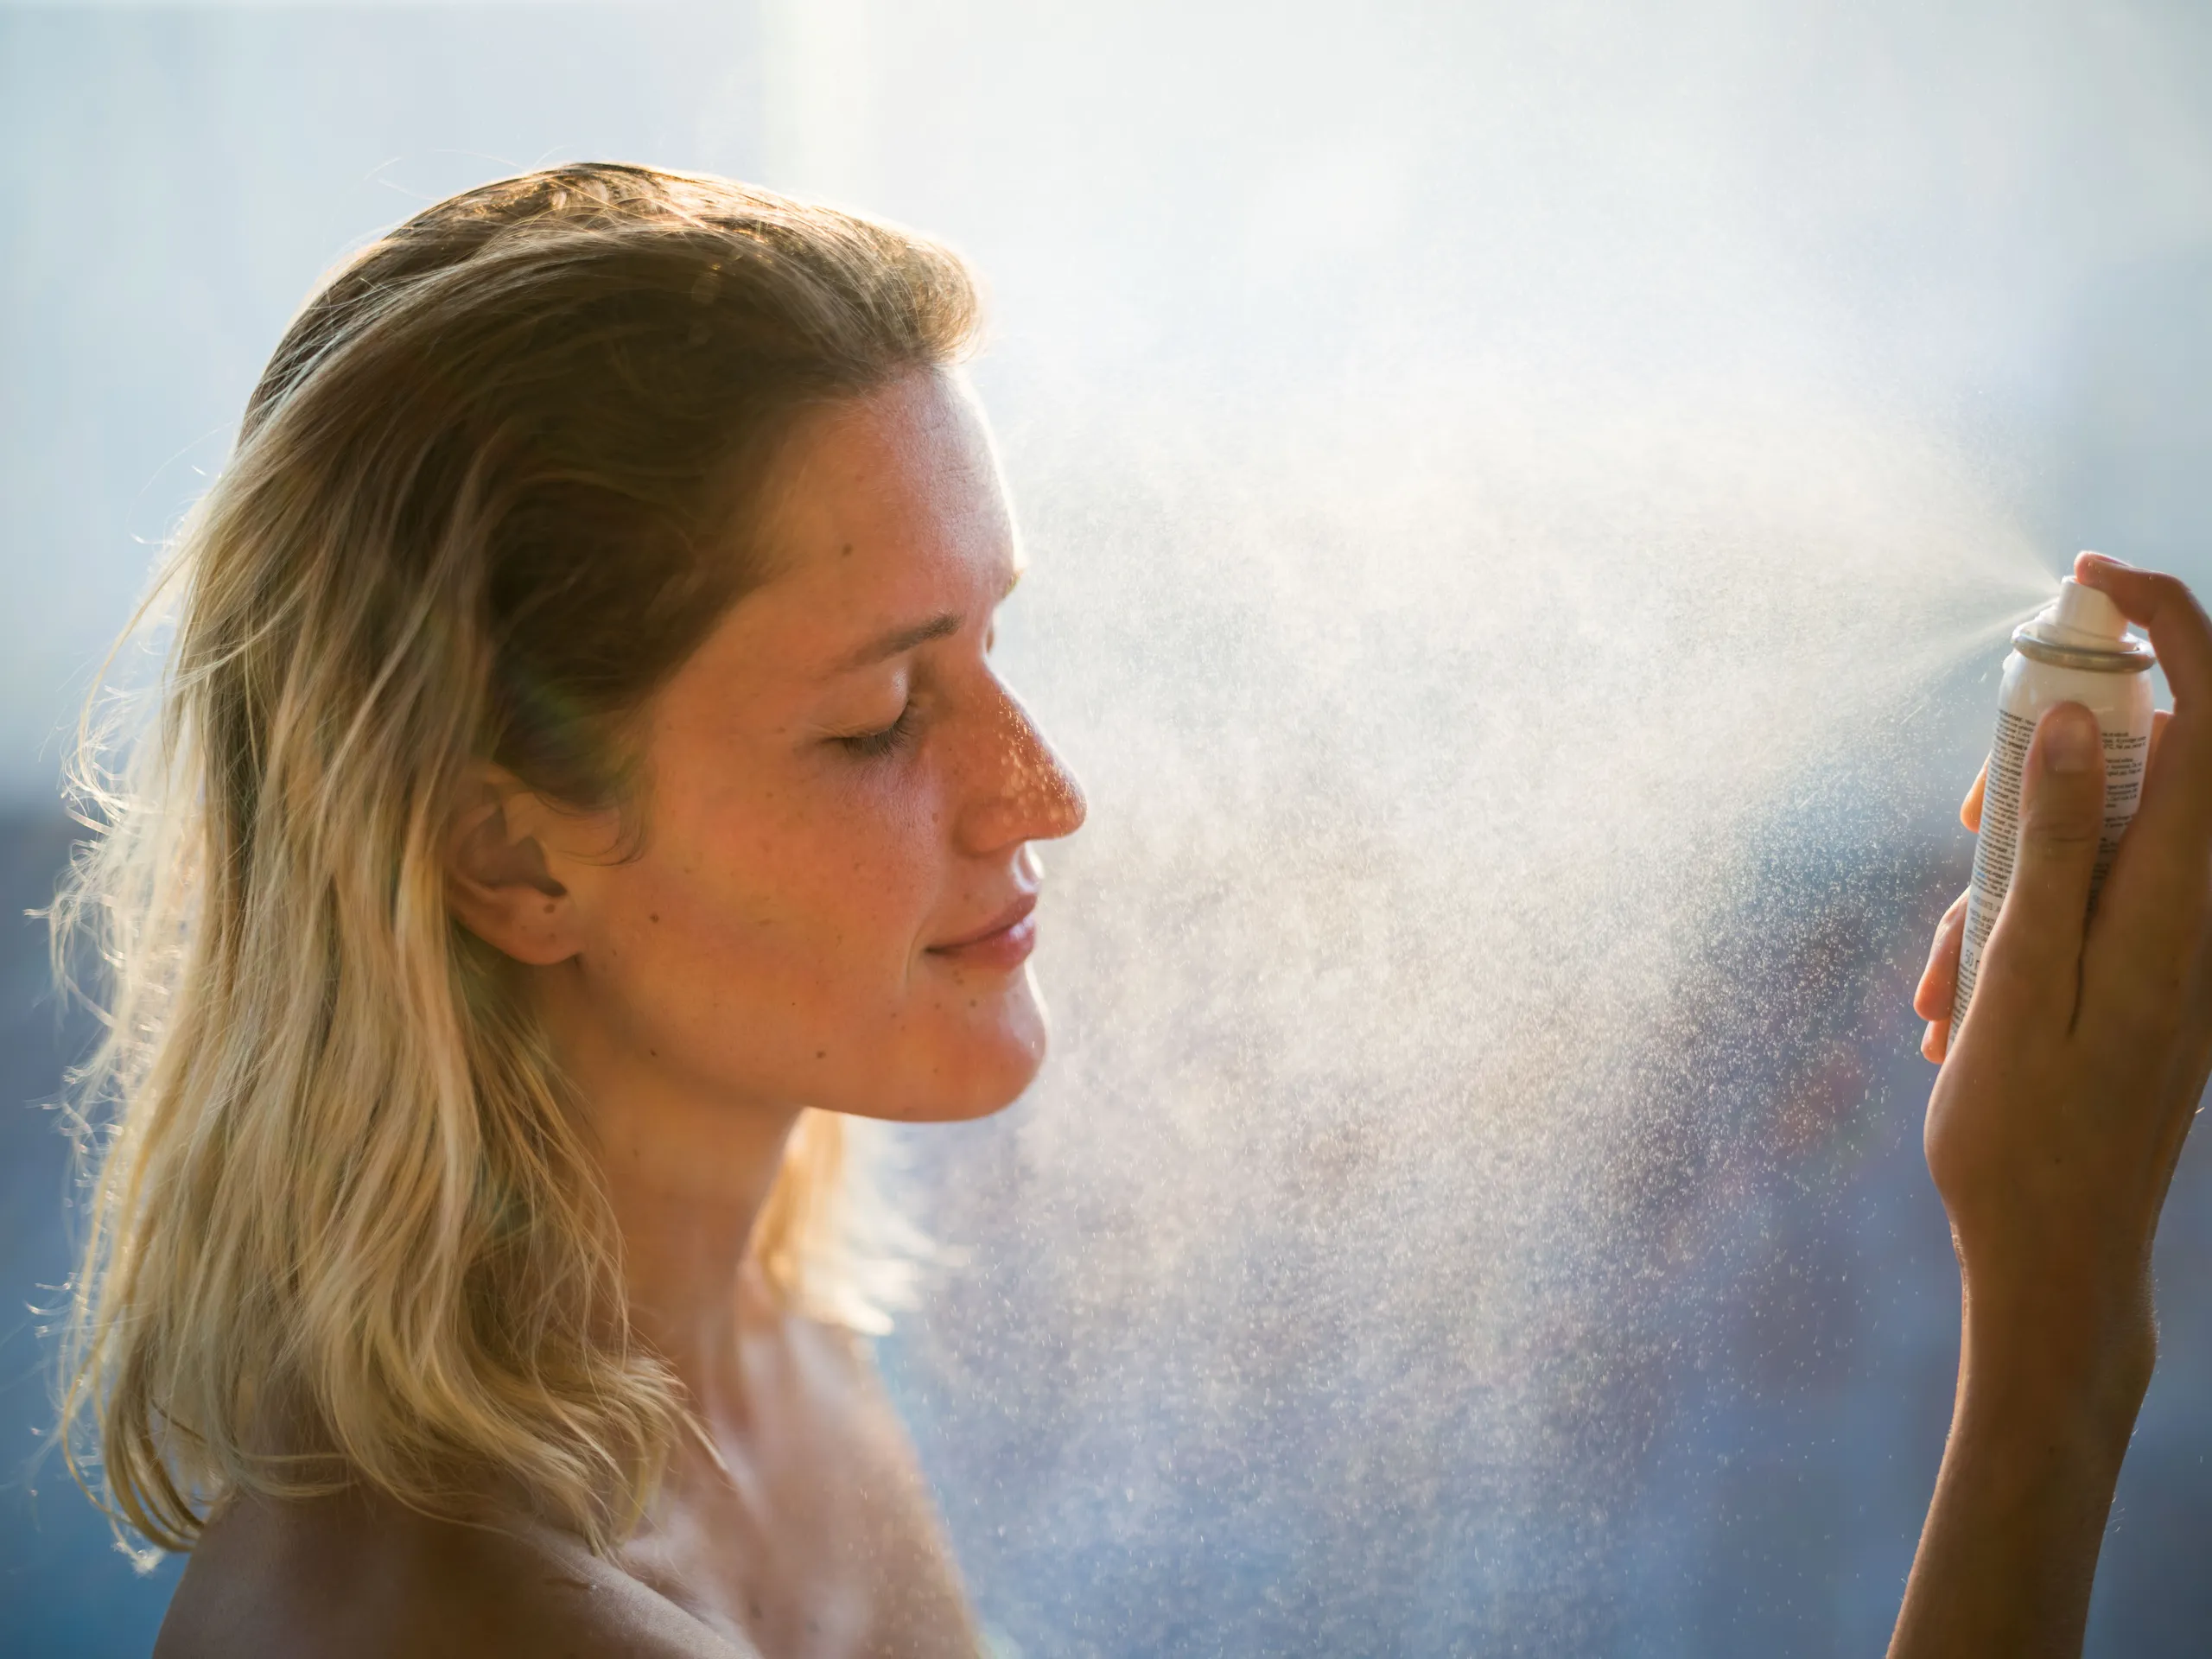 Xịt khoáng dưỡng ẩm cho da mặt Một ngày nắng và nước mặn chắc chắn sẽ khiến làn da của bạn bị khô hoàn toàn, và xịt khoáng dưỡng ẩm cho mặt là một cách dễ dàng để cung cấp độ ẩm cho da mà không gây cảm giác bết dính (hoặc rắc rối) khi mang theo kem dưỡng ẩm. Hãy tìm loại có các thành phần như axit hyaluronic và lô hội, và xịt một lần mỗi khi bạn thoa lại kem chống nắng.